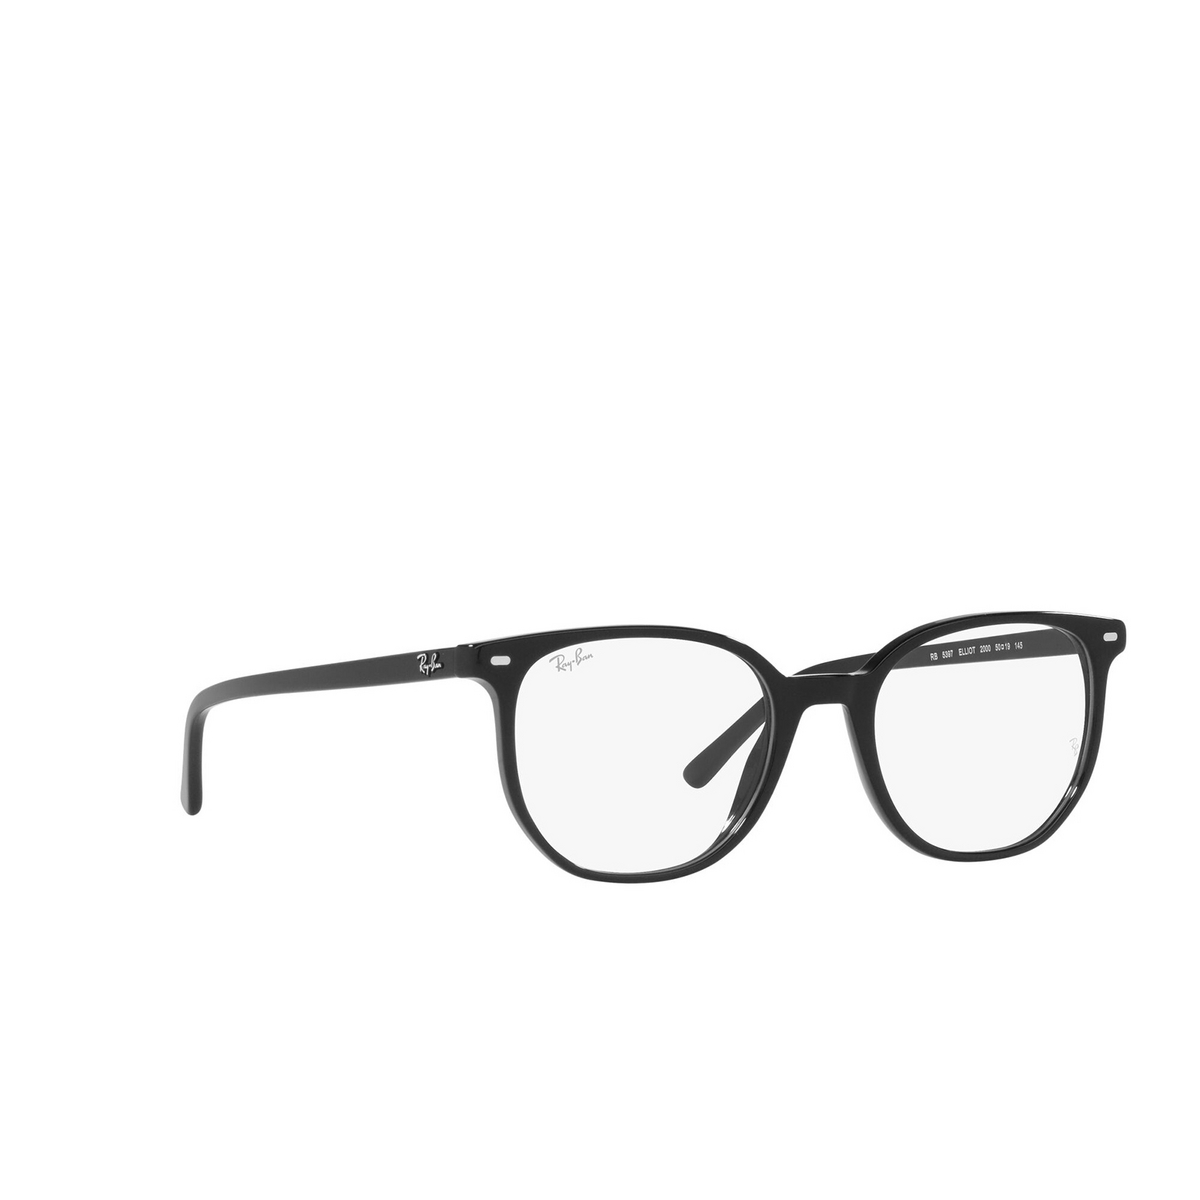 Ray-Ban® Irregular Eyeglasses: Elliot RX5397 color Black 2000 - three-quarters view.